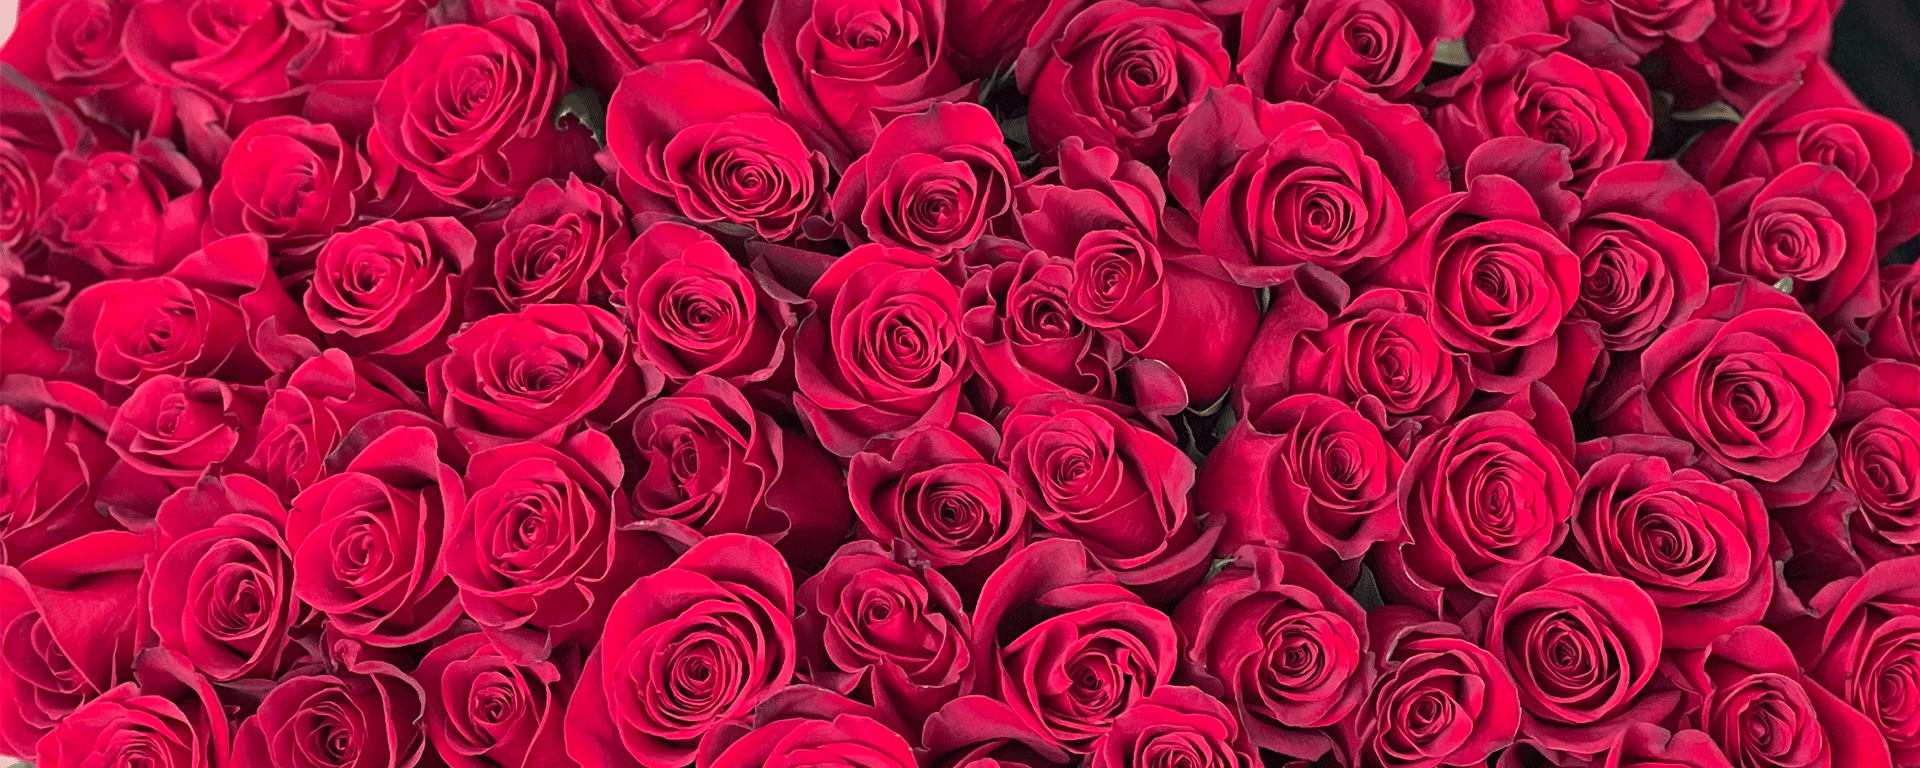 Много красных роз